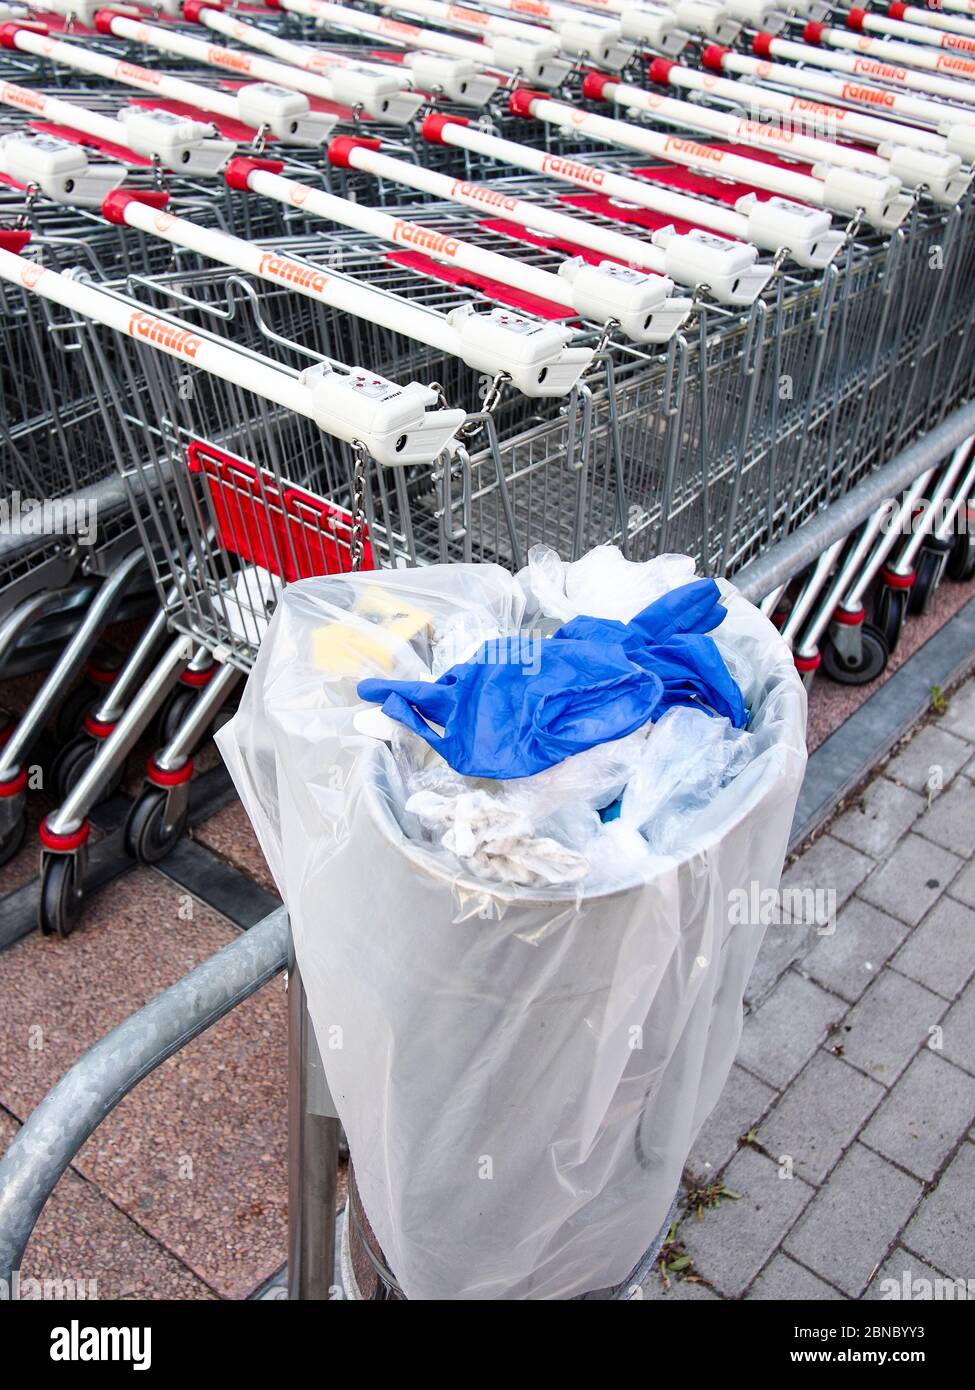 Cremona, Lombardie, Italie - 13 mai 2020 - poubelle et déchets à proximité  des chariots à l'extérieur du supermarché, pas de gens Photo Stock - Alamy